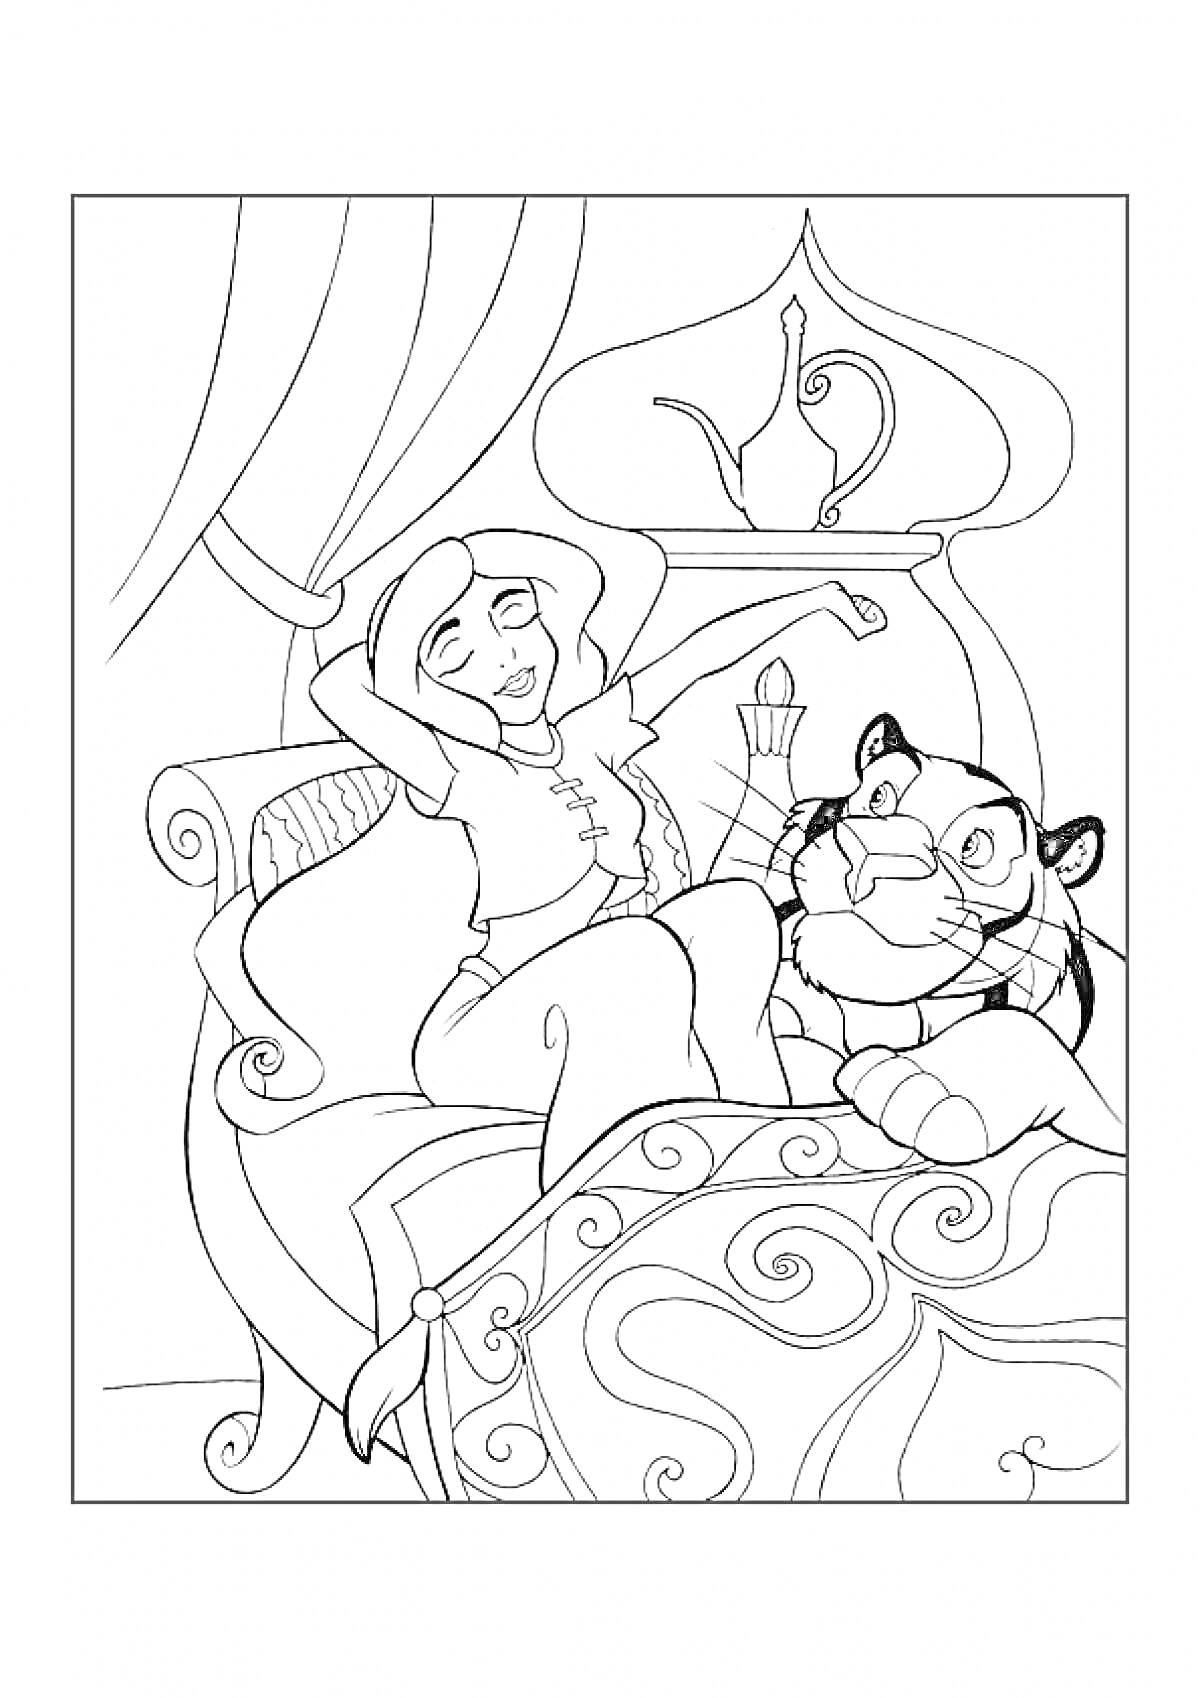 Раскраска Принцесса Жасмин на кровати с тигром Раджей в уютной комнате с занавесями и чайником